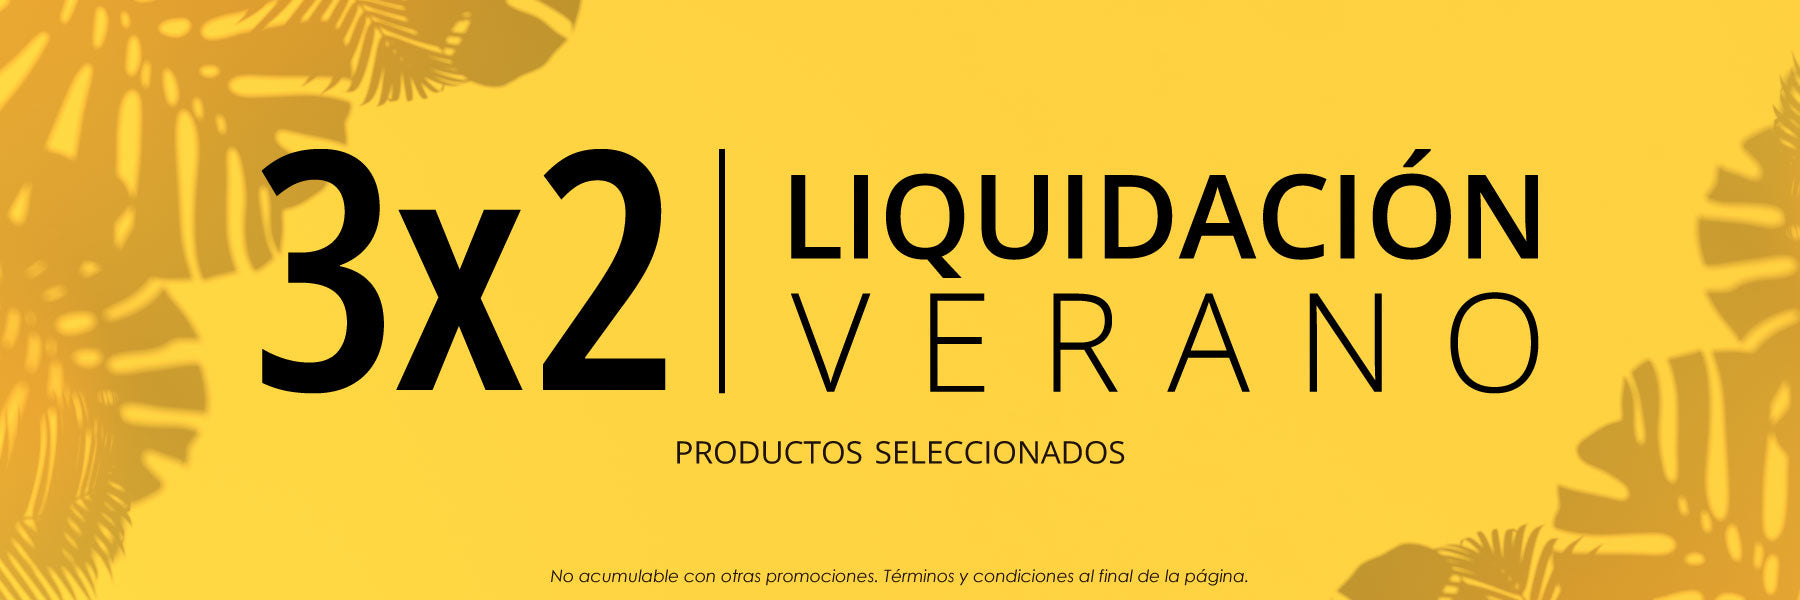 Liquidación Verano - 3x2